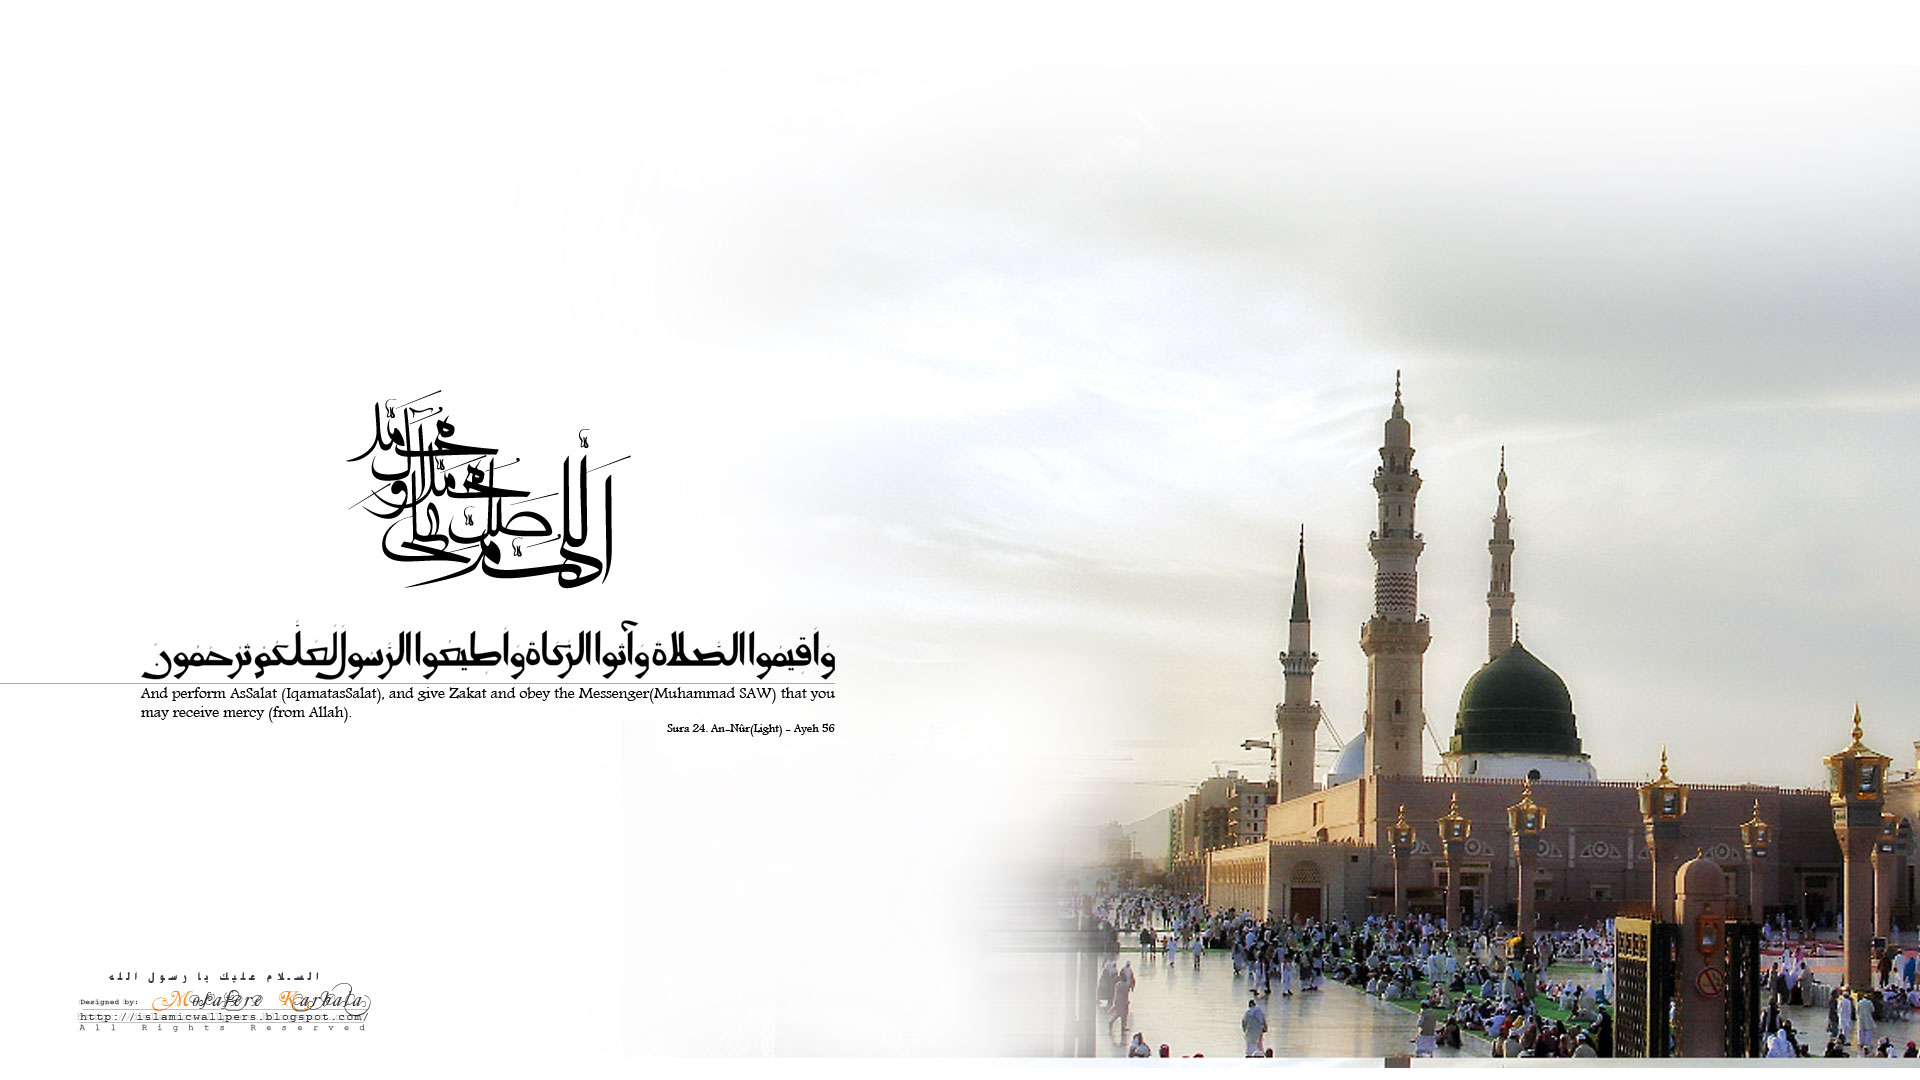 fond d'écran islamique hd 1080p,texte,architecture,lieu de culte,ville,photographie de stock